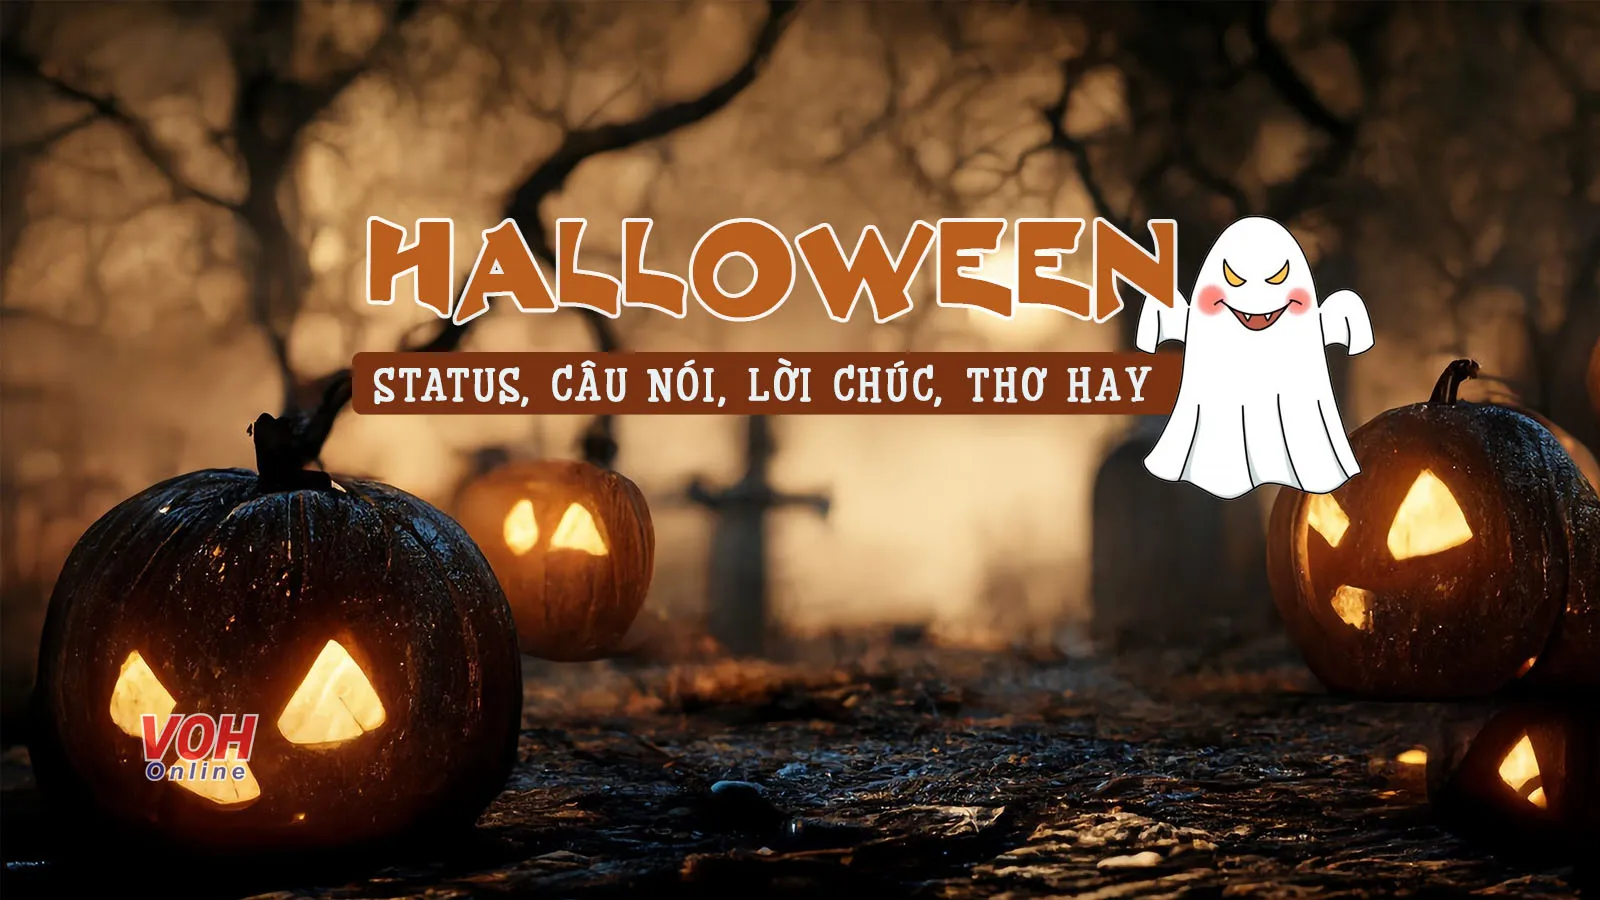 105 câu nói, status Halloween giúp ngày hội hóa trang thêm ấn tượng